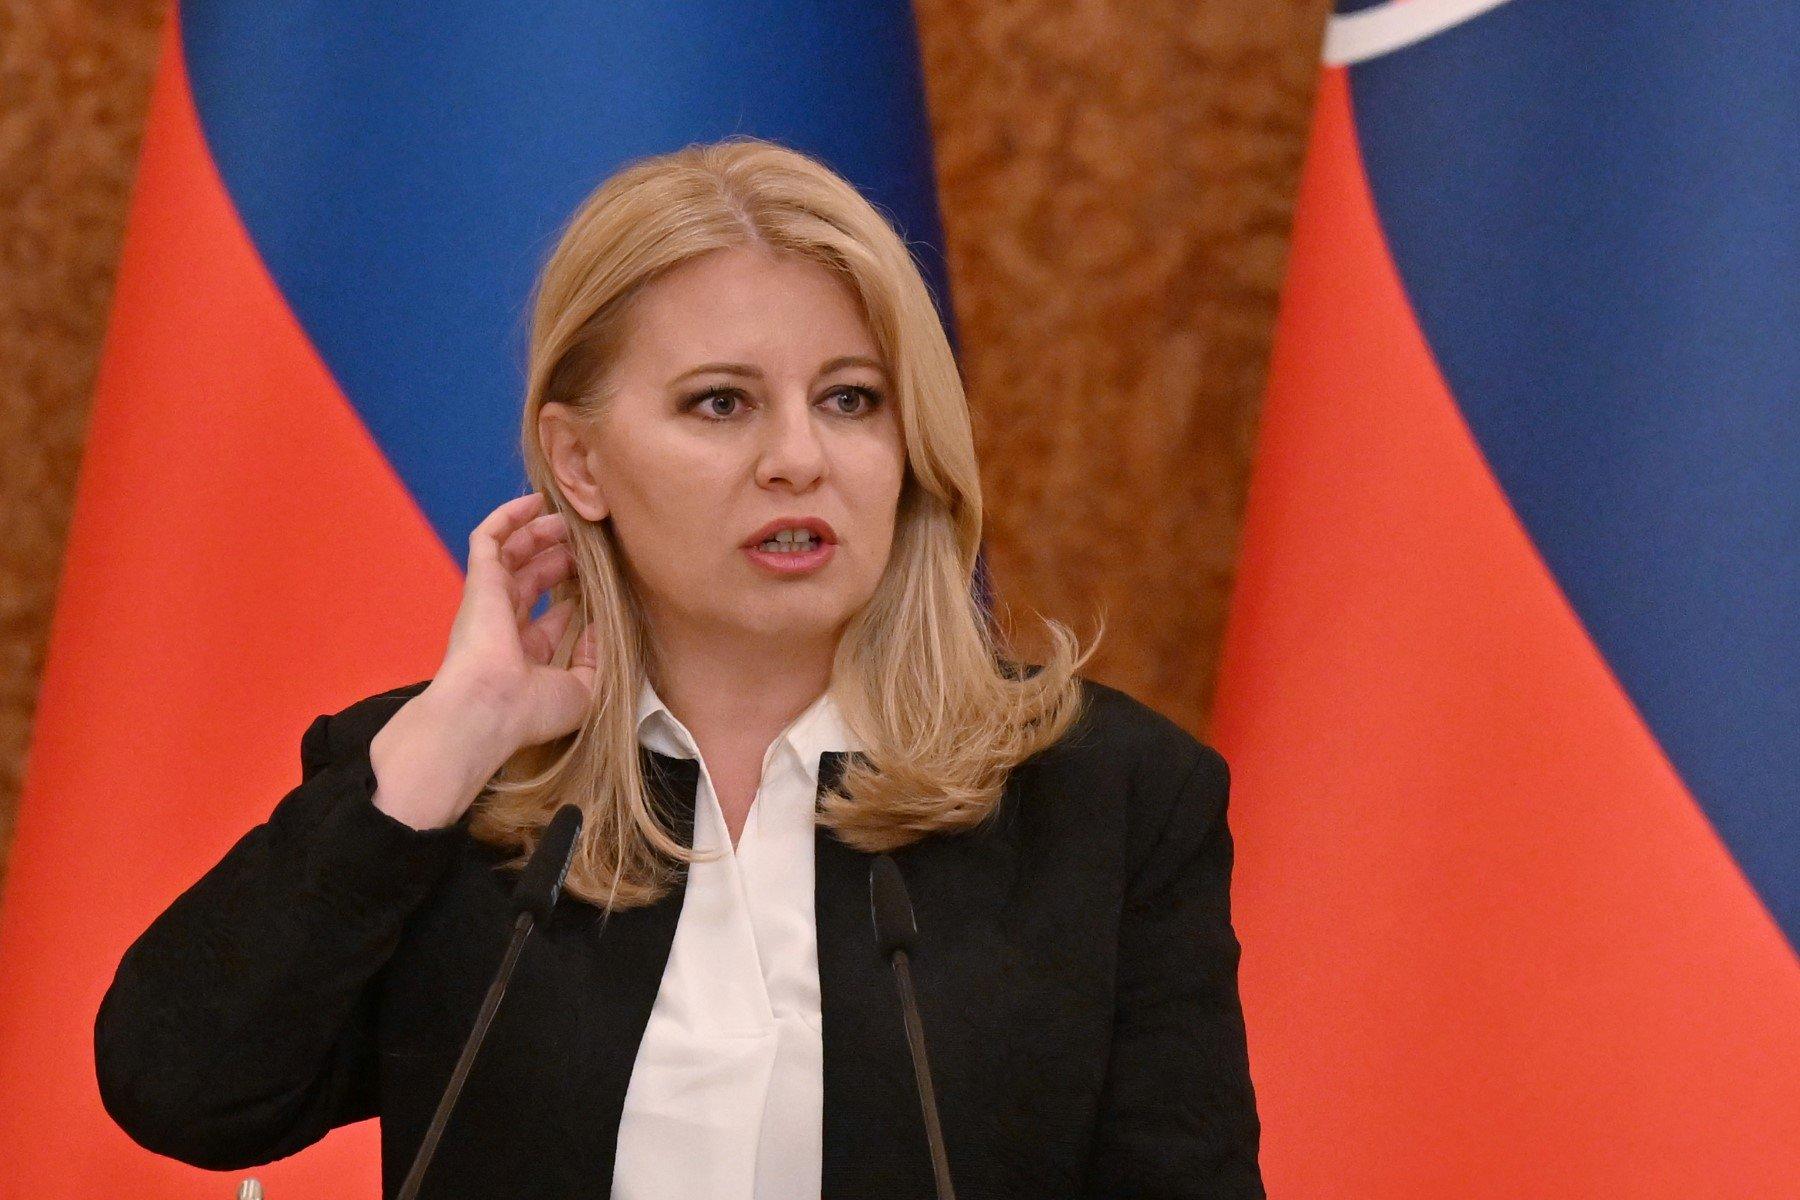 Kobieta z blond włosami, prezydentka Słowacji